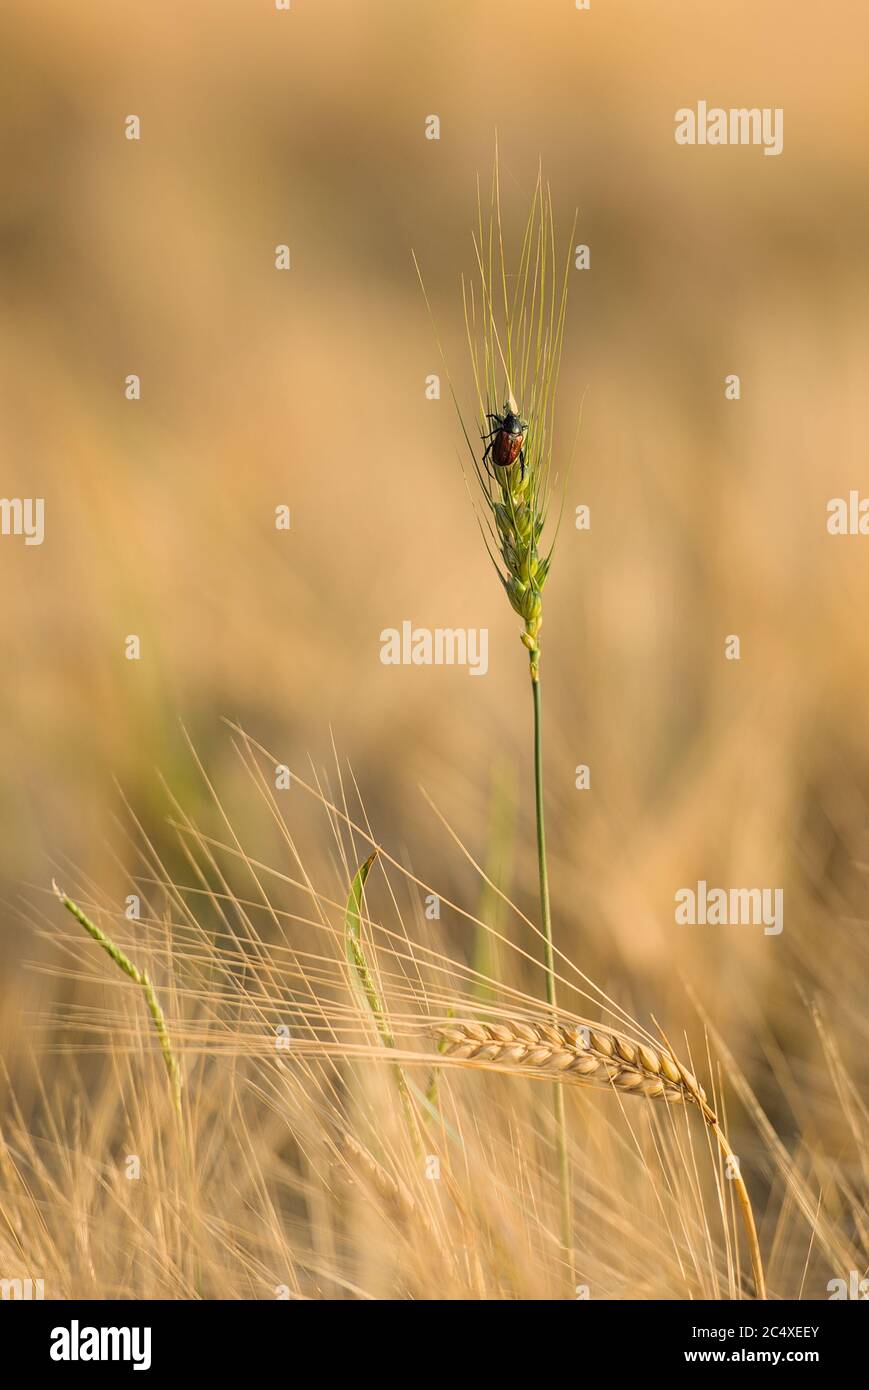 Käfer auf einer grünen Ähre im Getreidefeld Banque D'Images